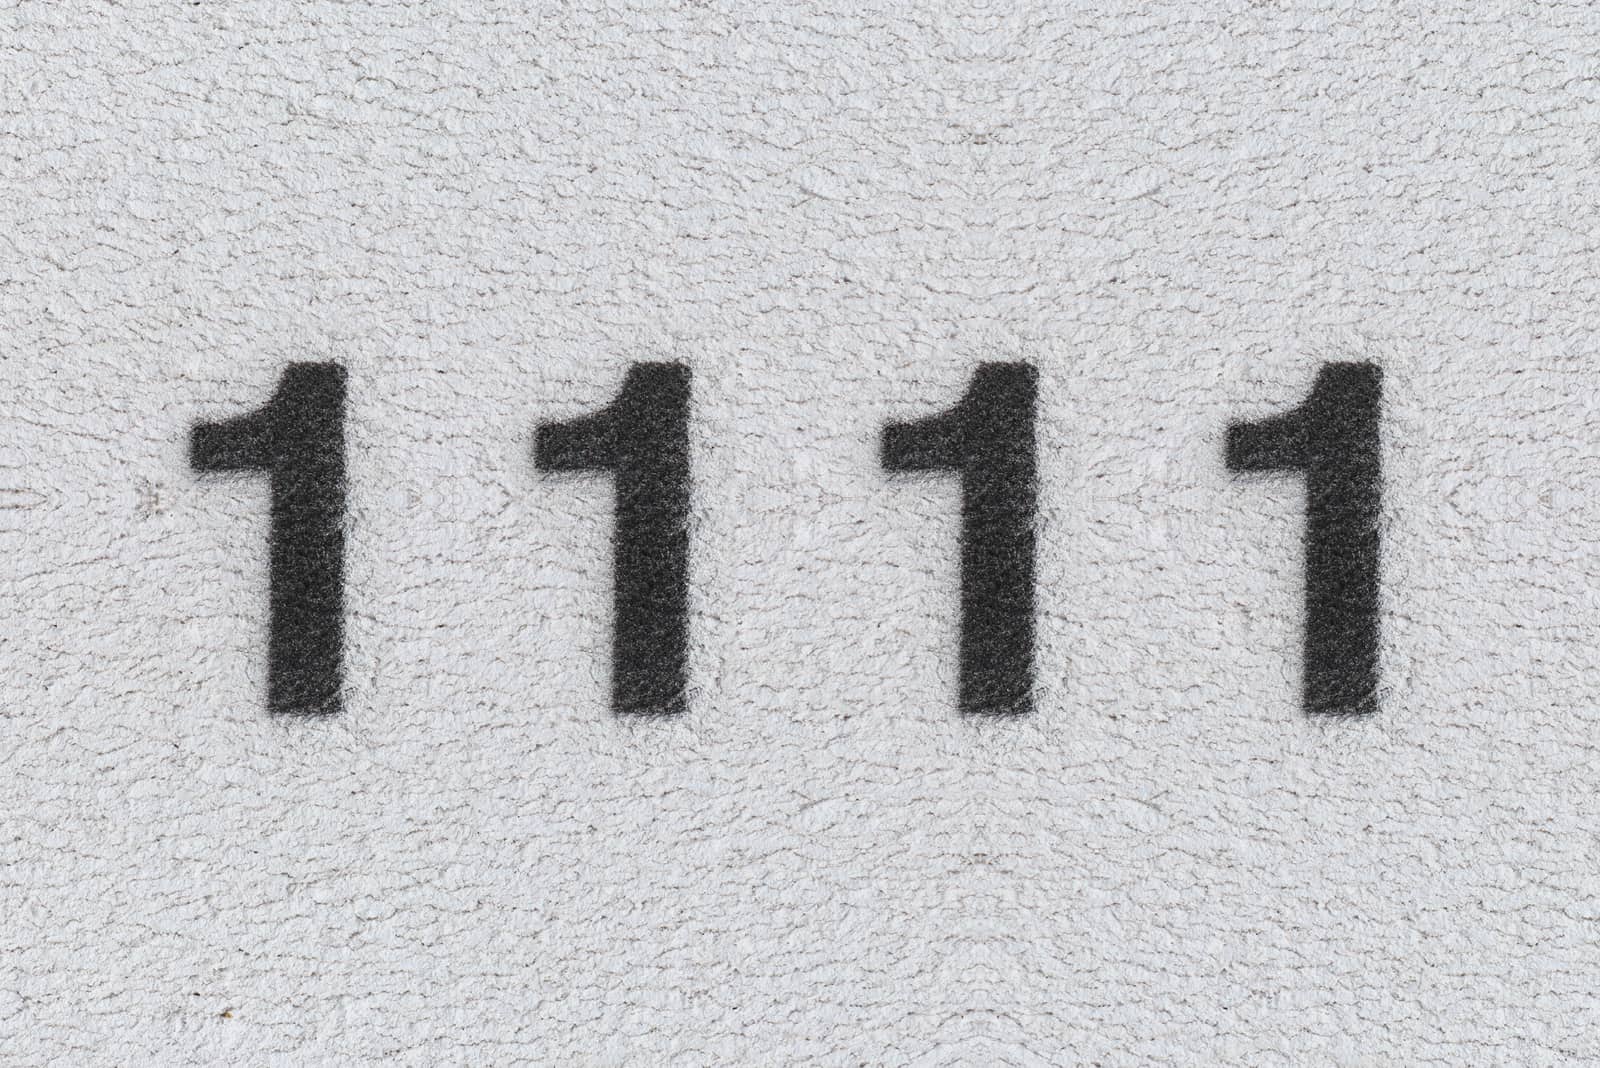 Schwarze Nummer 1111 auf der weißen Wand